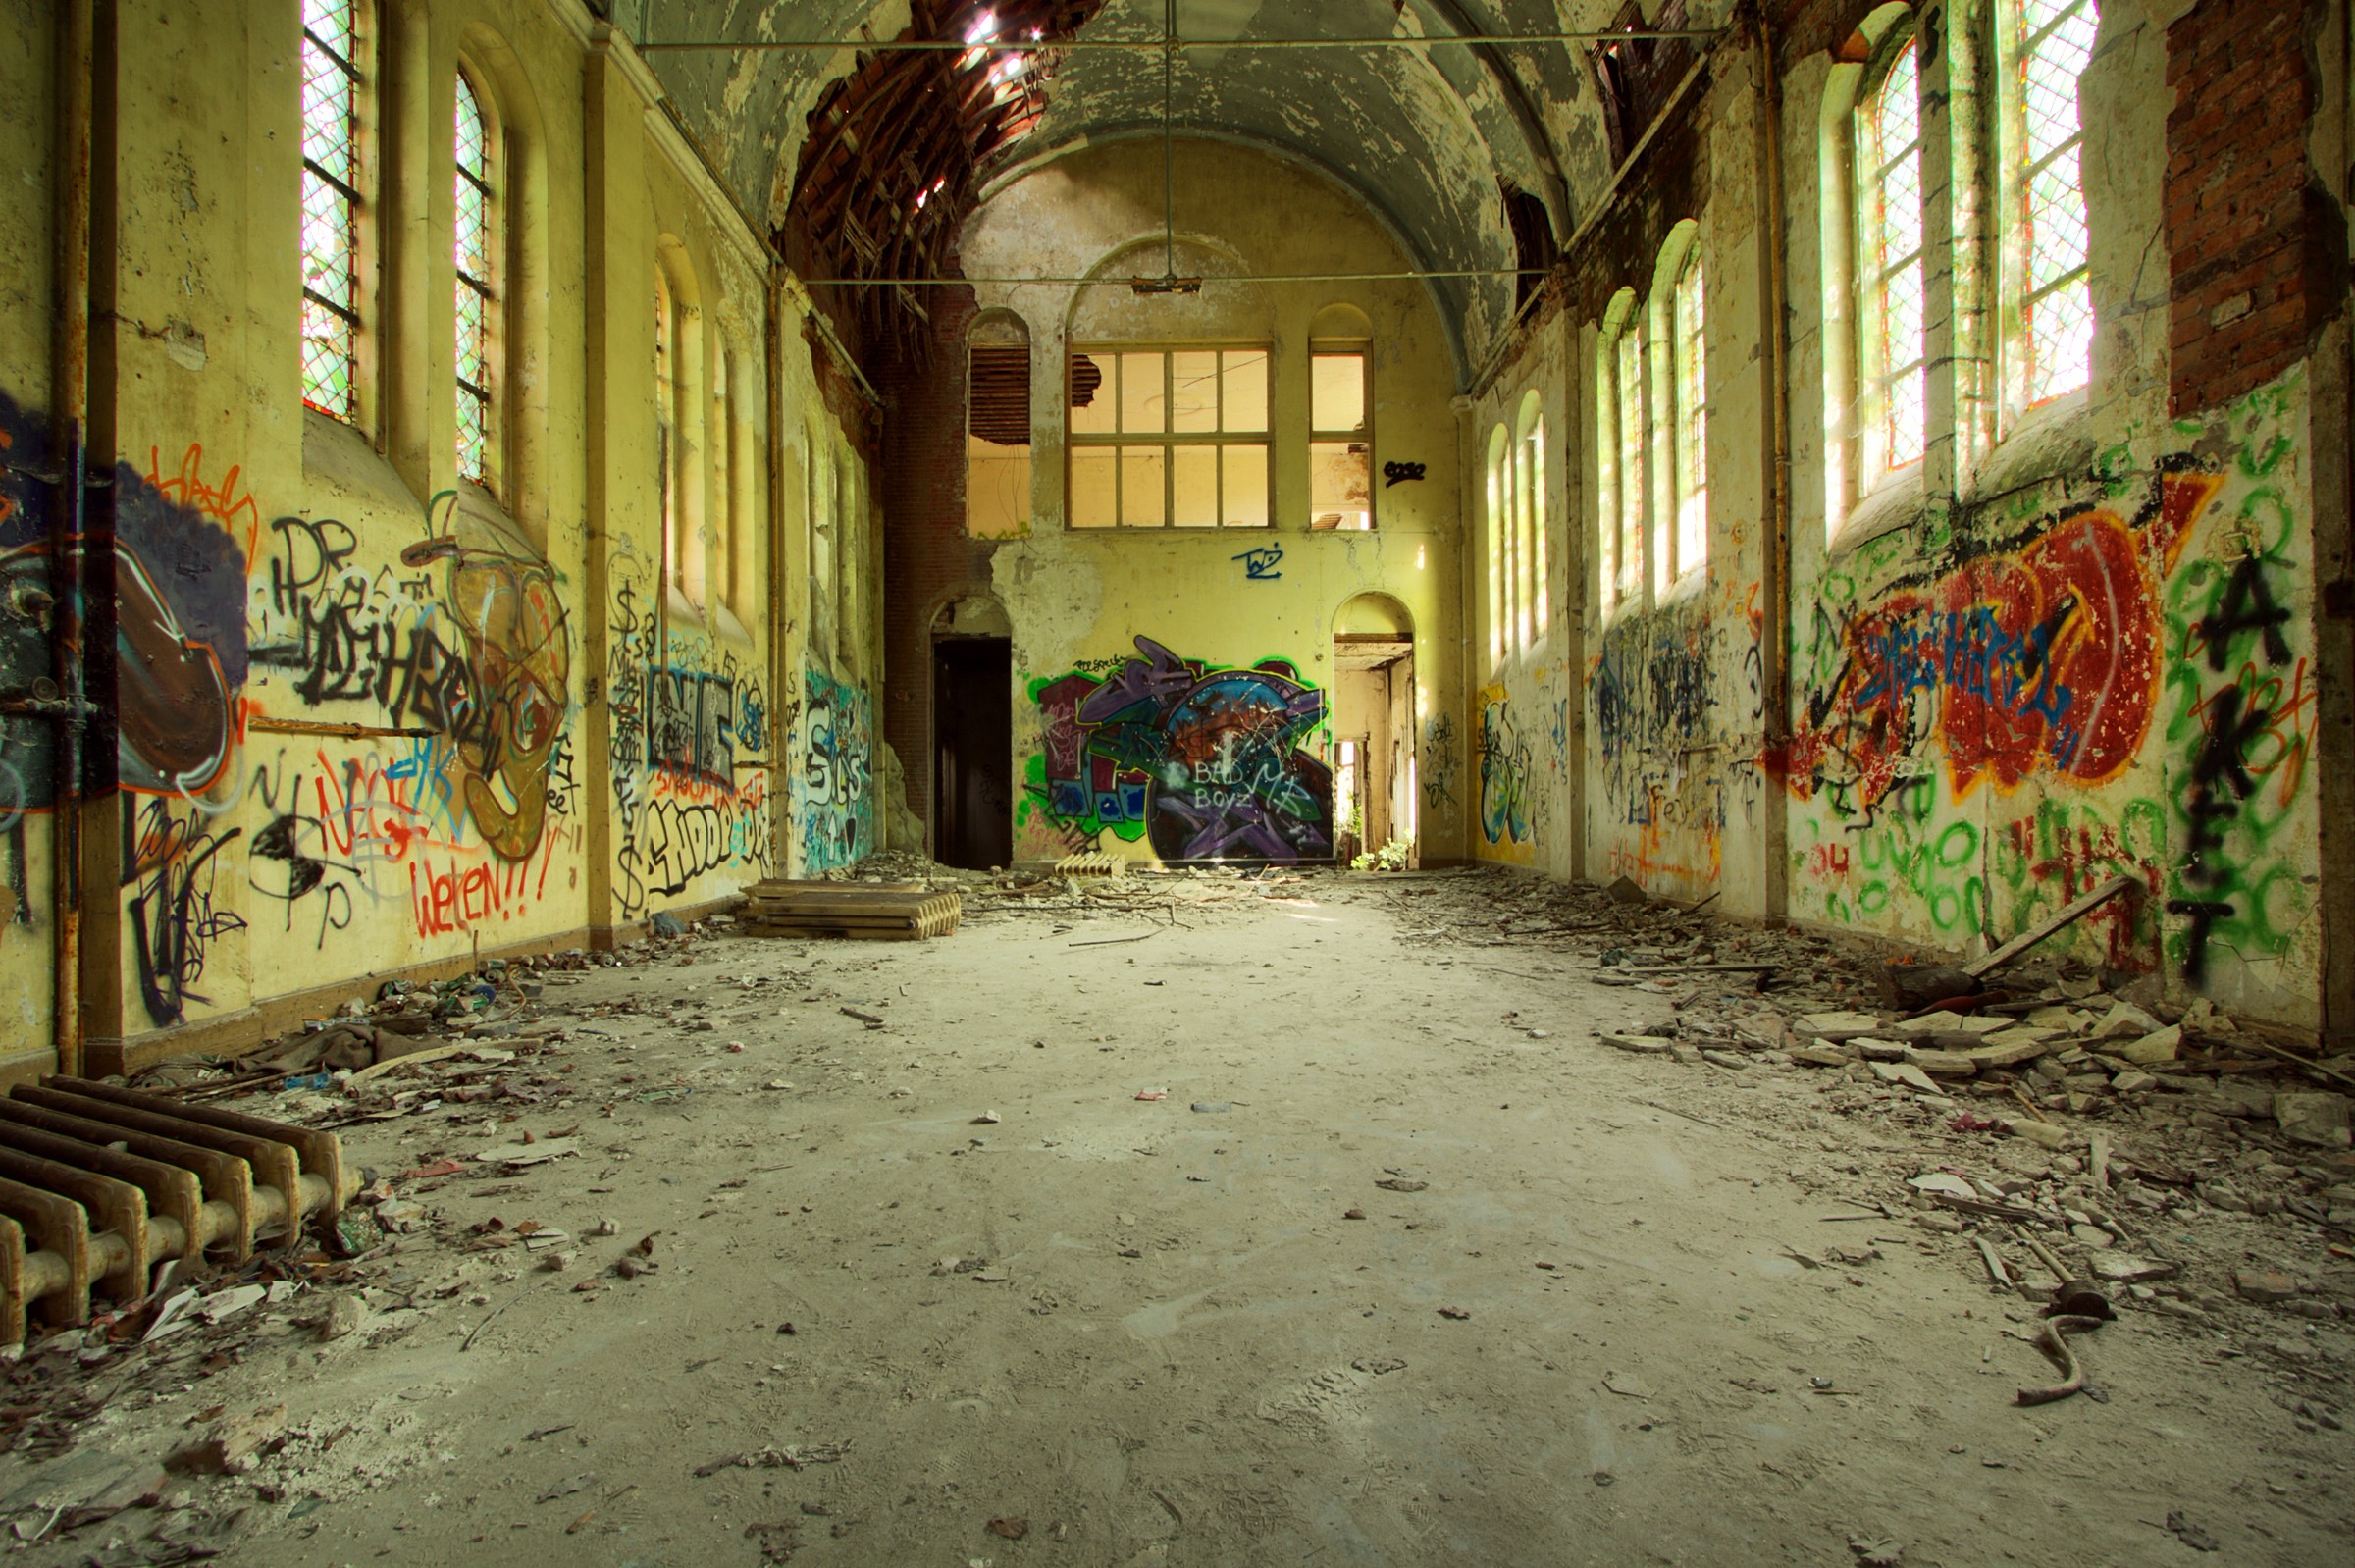 graffiti, abandoned, old buildings - desktop wallpaper